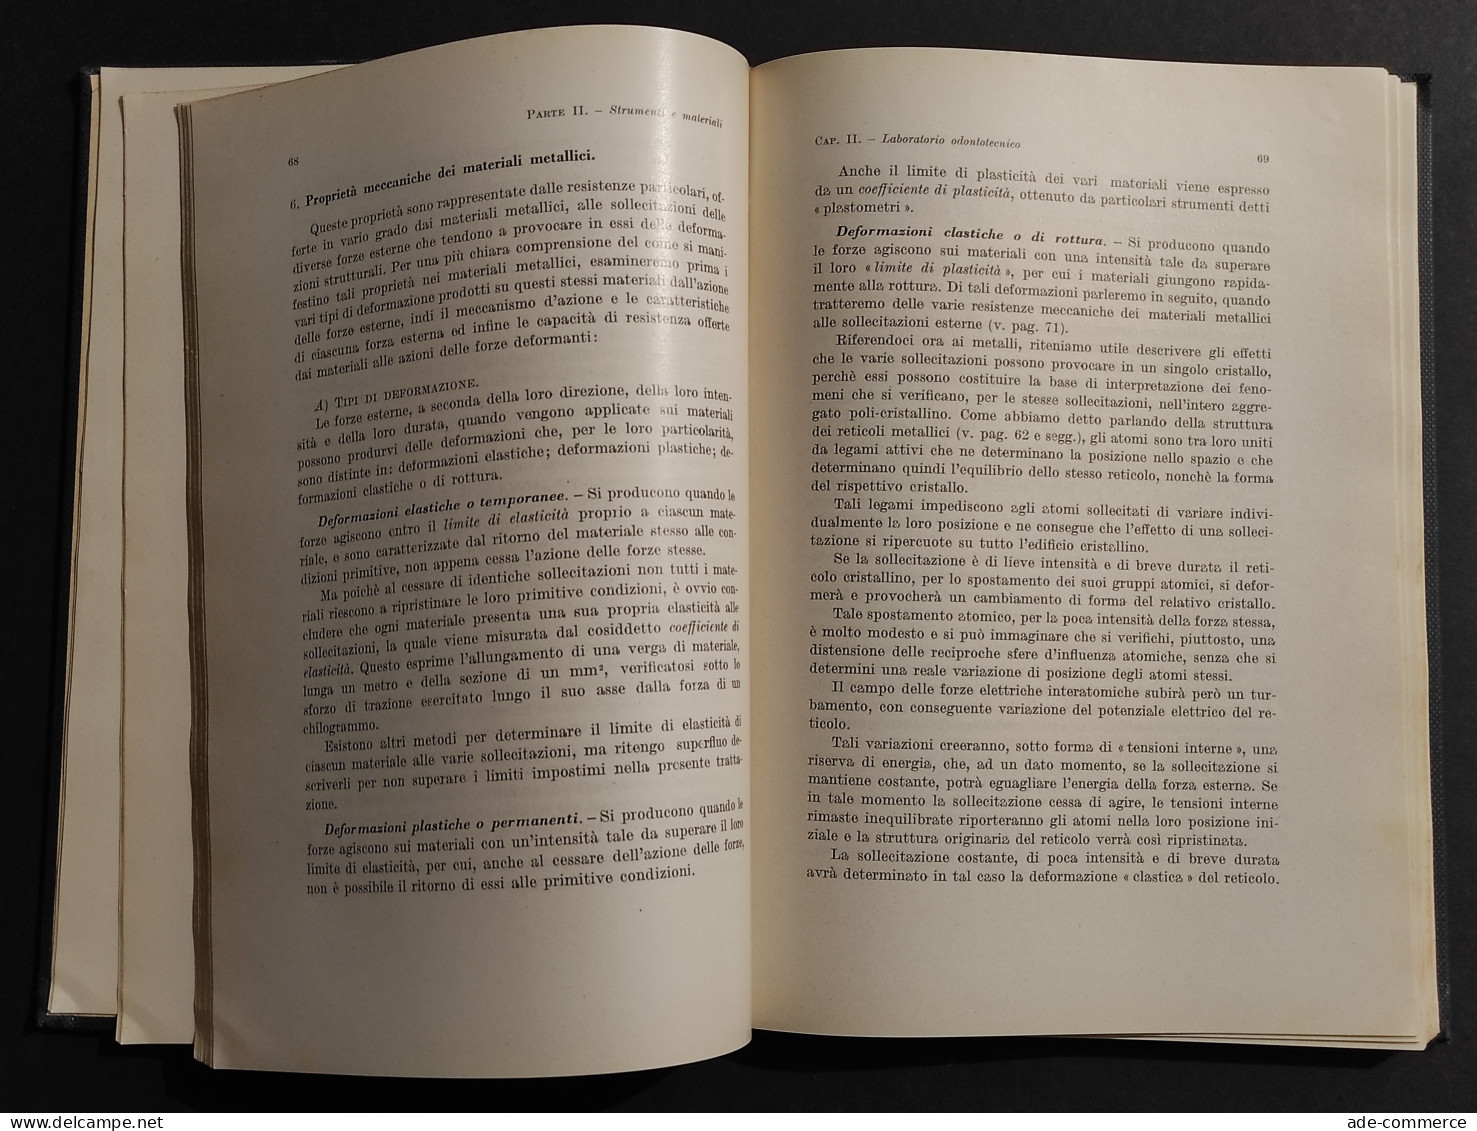 L'Arte Protesica Dei Dispositivi A Ponte - U. Mancini - Ed. Patron - 1956 - Medecine, Psychology